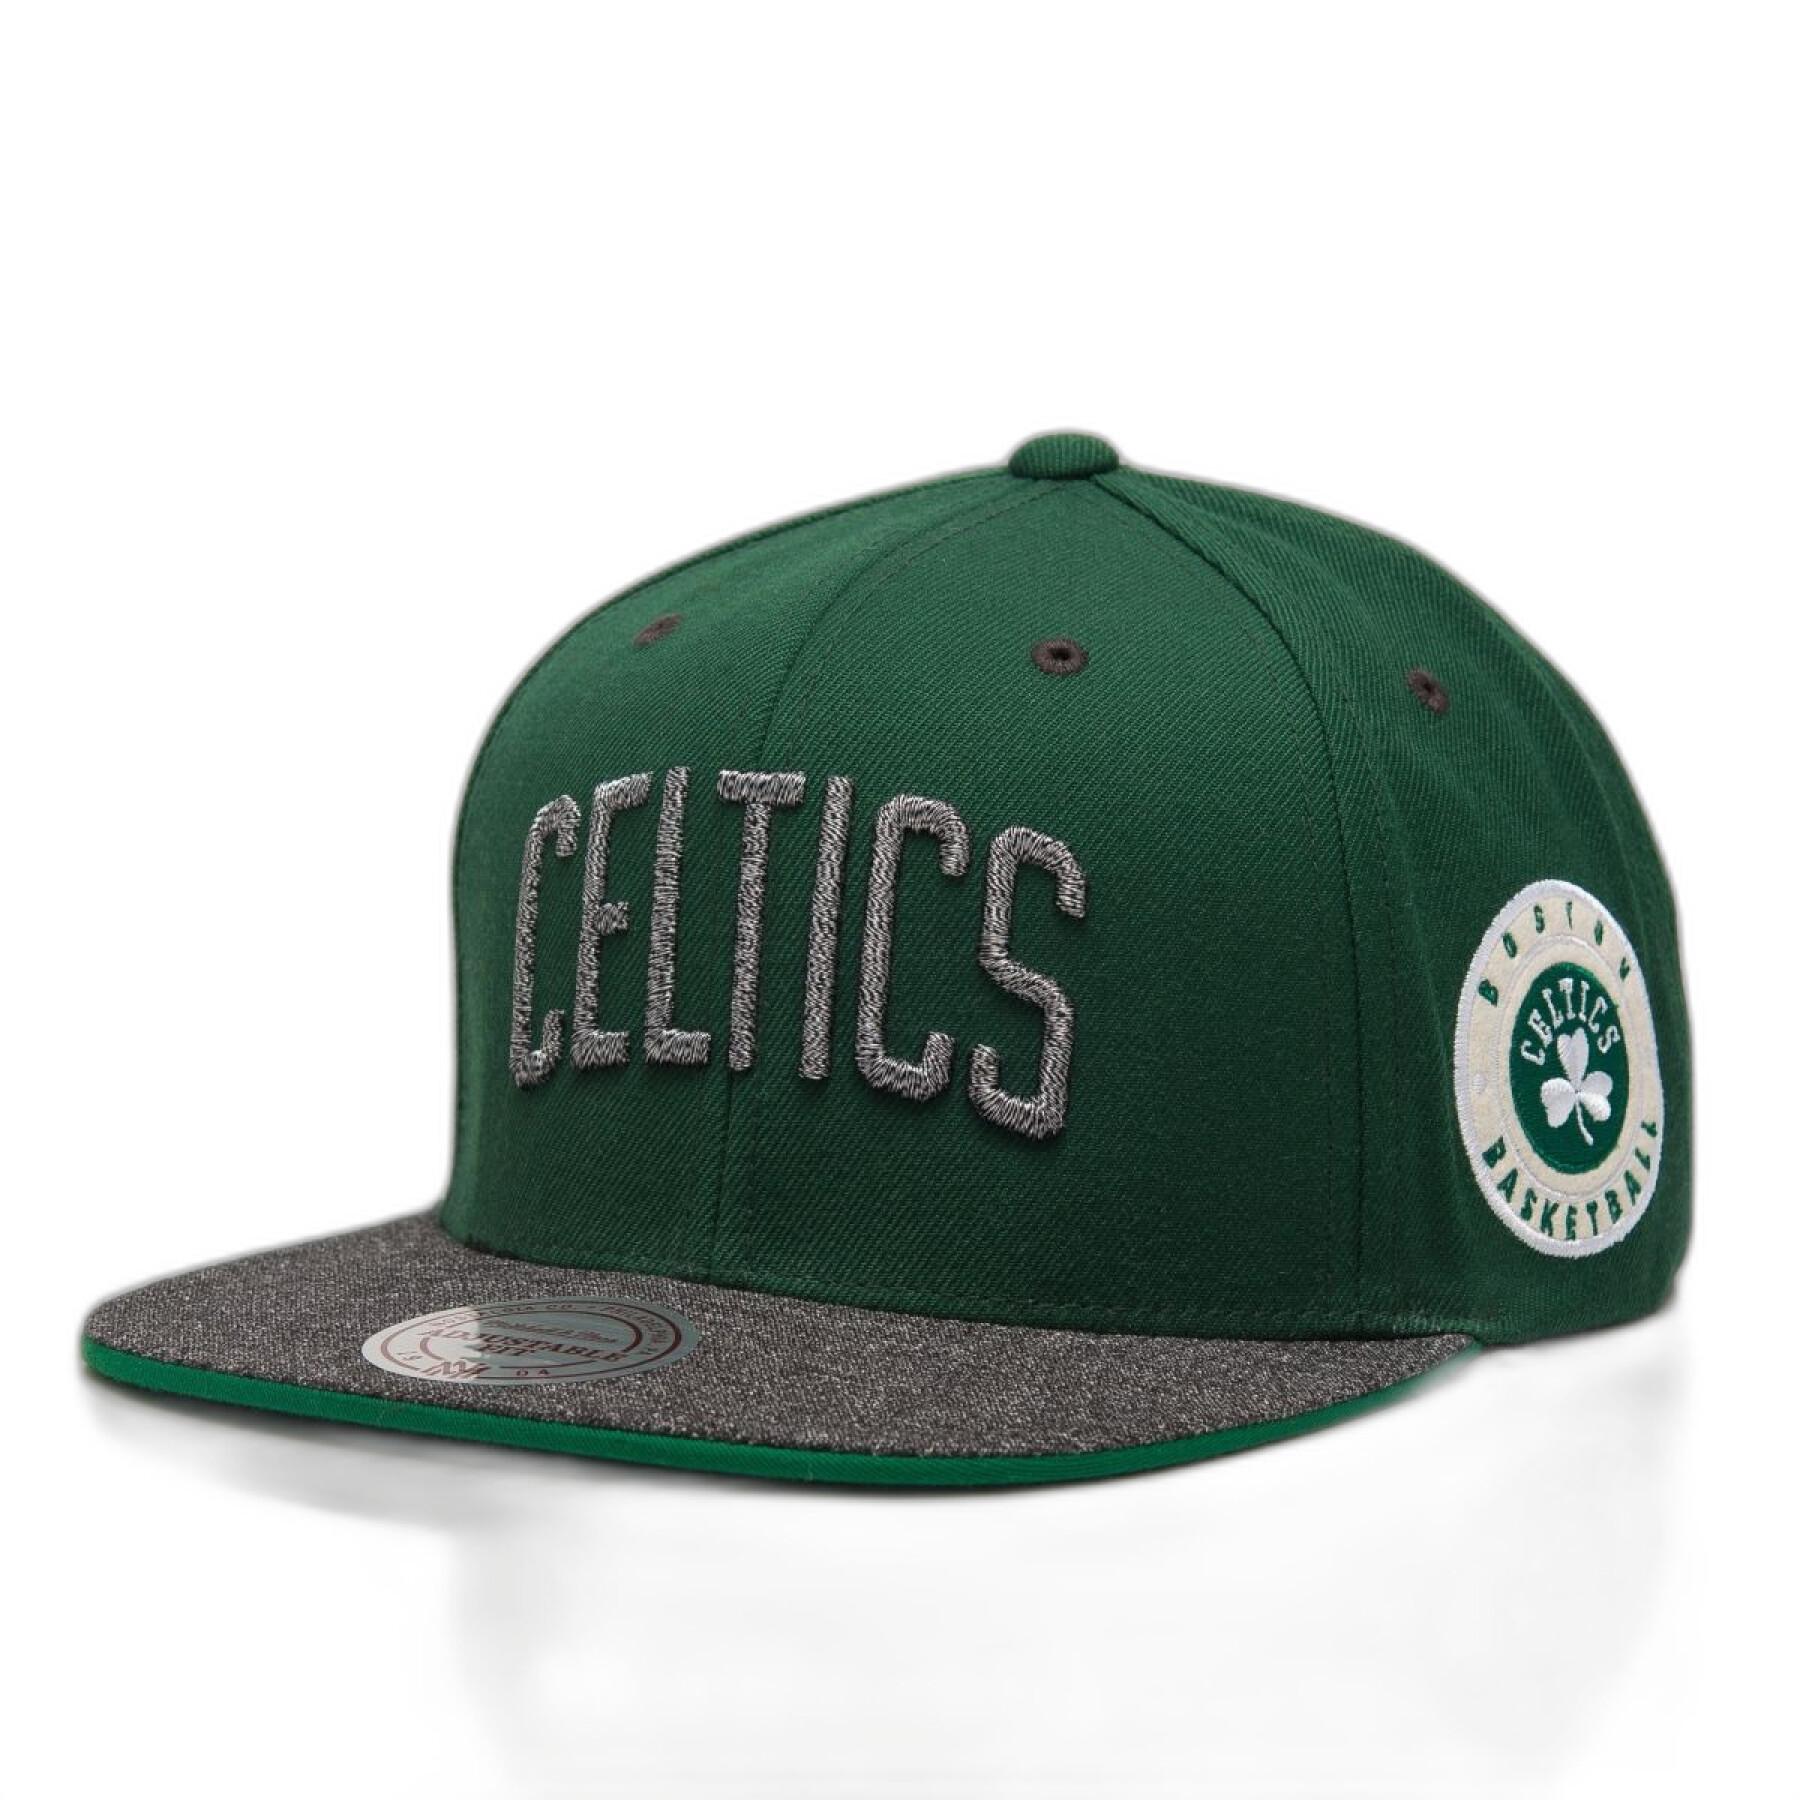 Cap Boston Celtics hwc melange patch